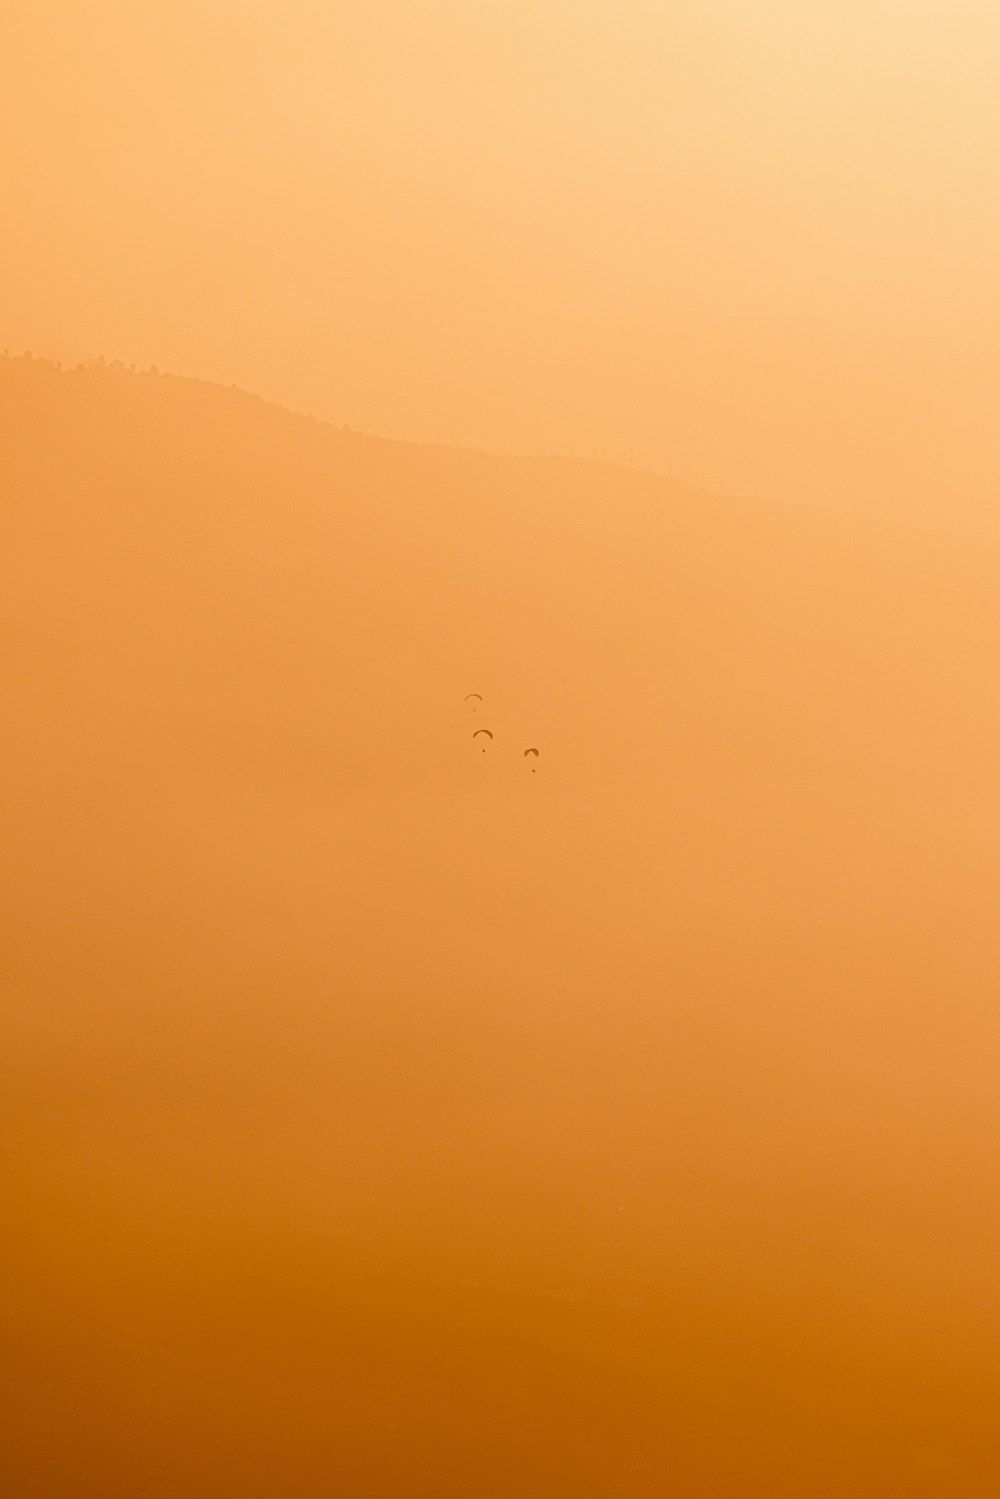 a group of birds flying through a foggy sky